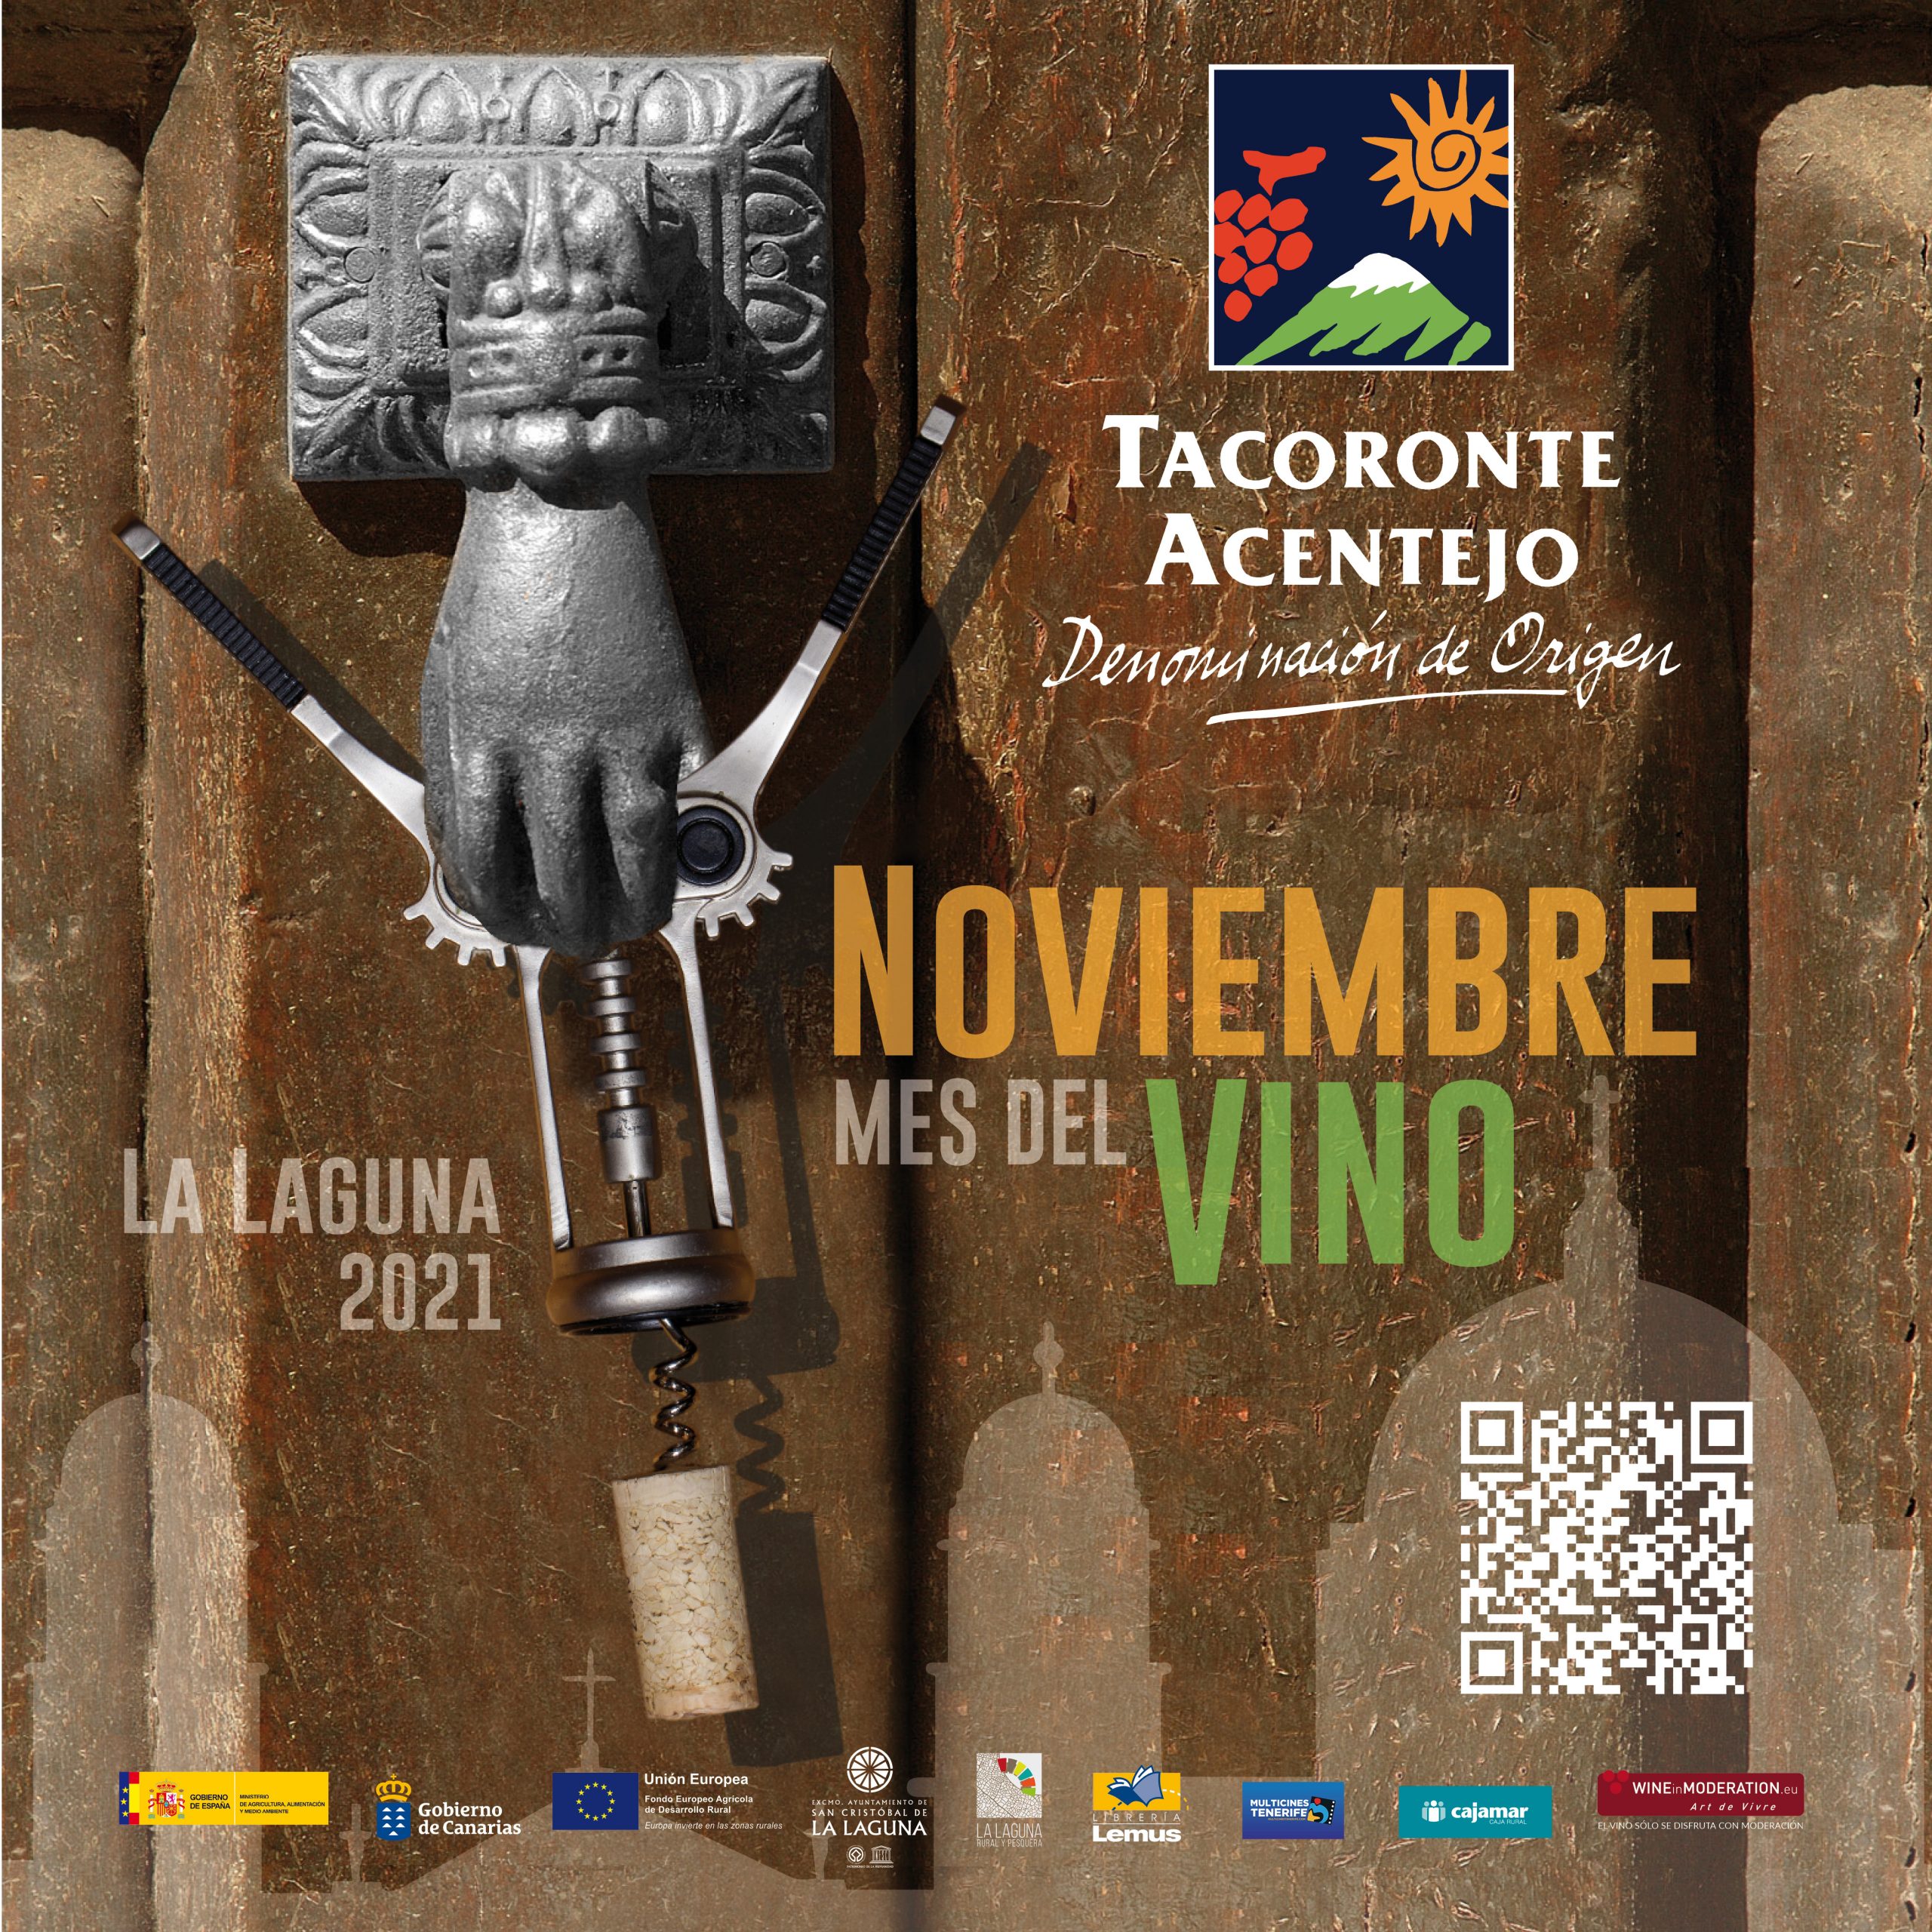 NOVIEMBRE Mes del Vino Tacoronte-Acentejo en La Laguna 2021